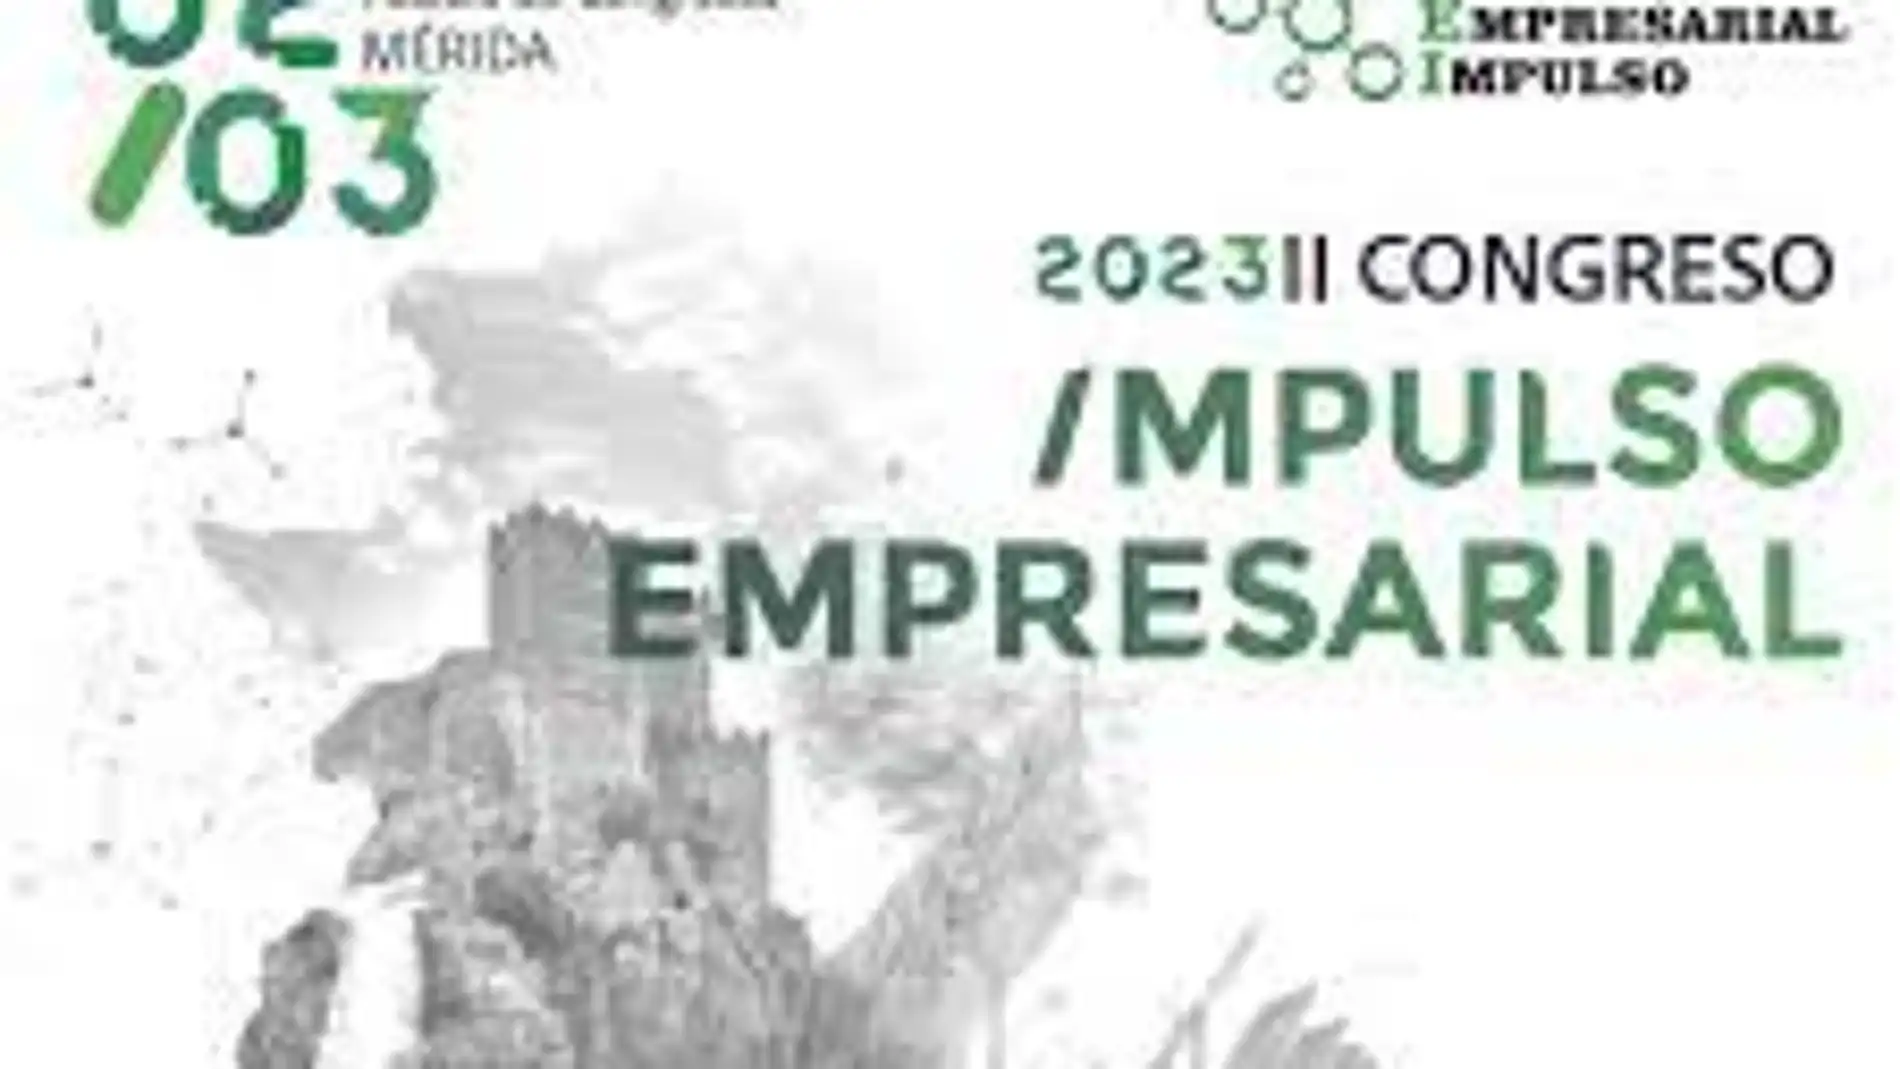 El II Congreso Impulso Empresarial debatirá este jueves en Mérida sobre turismo, innovación y energía en Extremadura